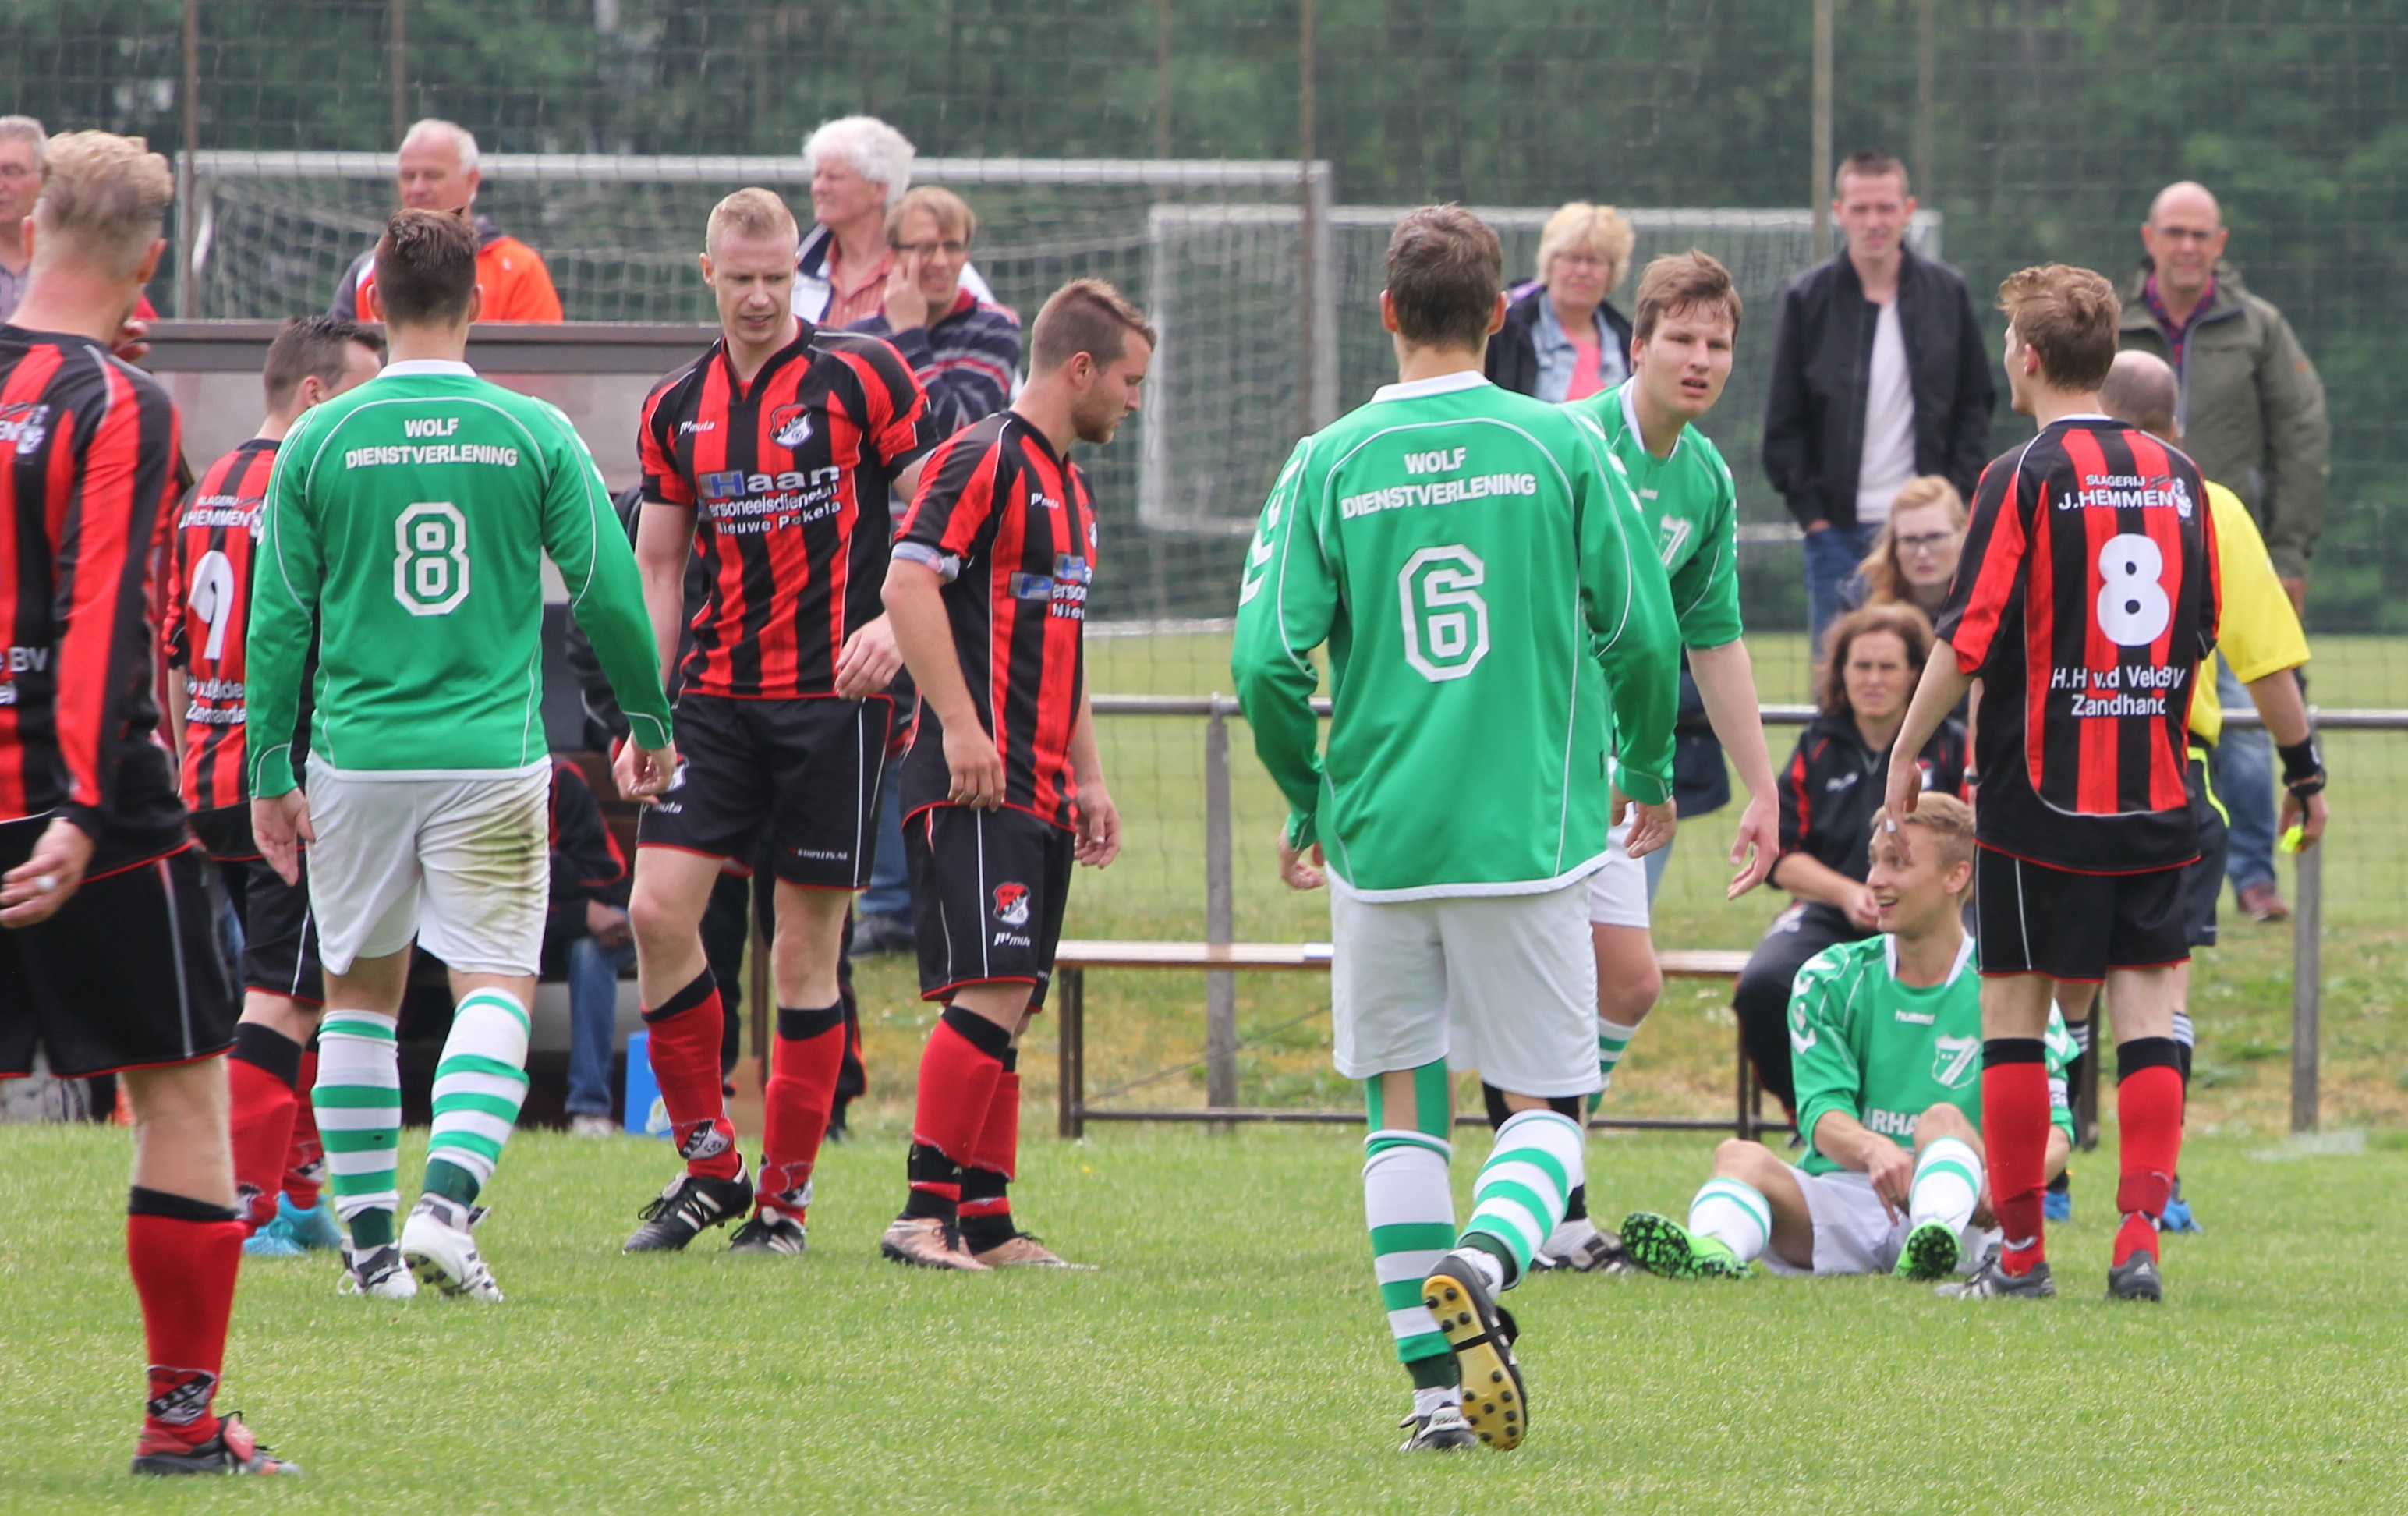 Beslissend moment in de wedstrijd: Bert Hut en Jerremy Weerts (zittend) krijgen rood...